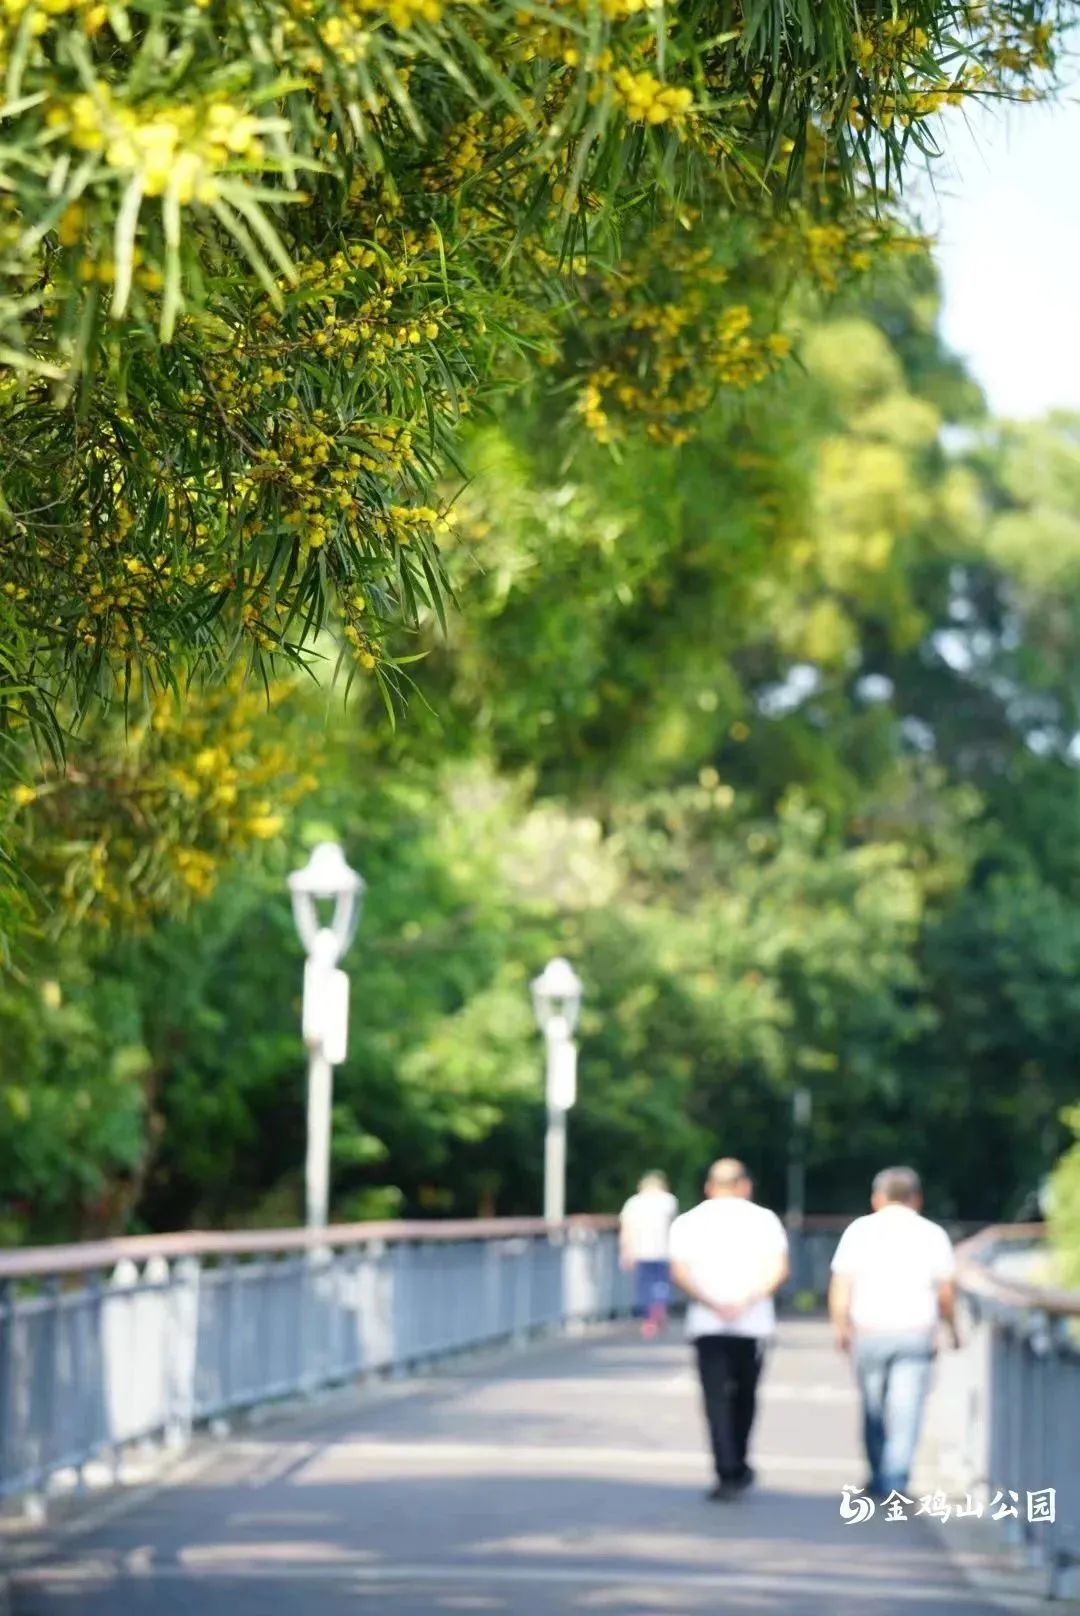 初夏金鸡山公园 繁花绿叶绘就油画般的莫奈花园